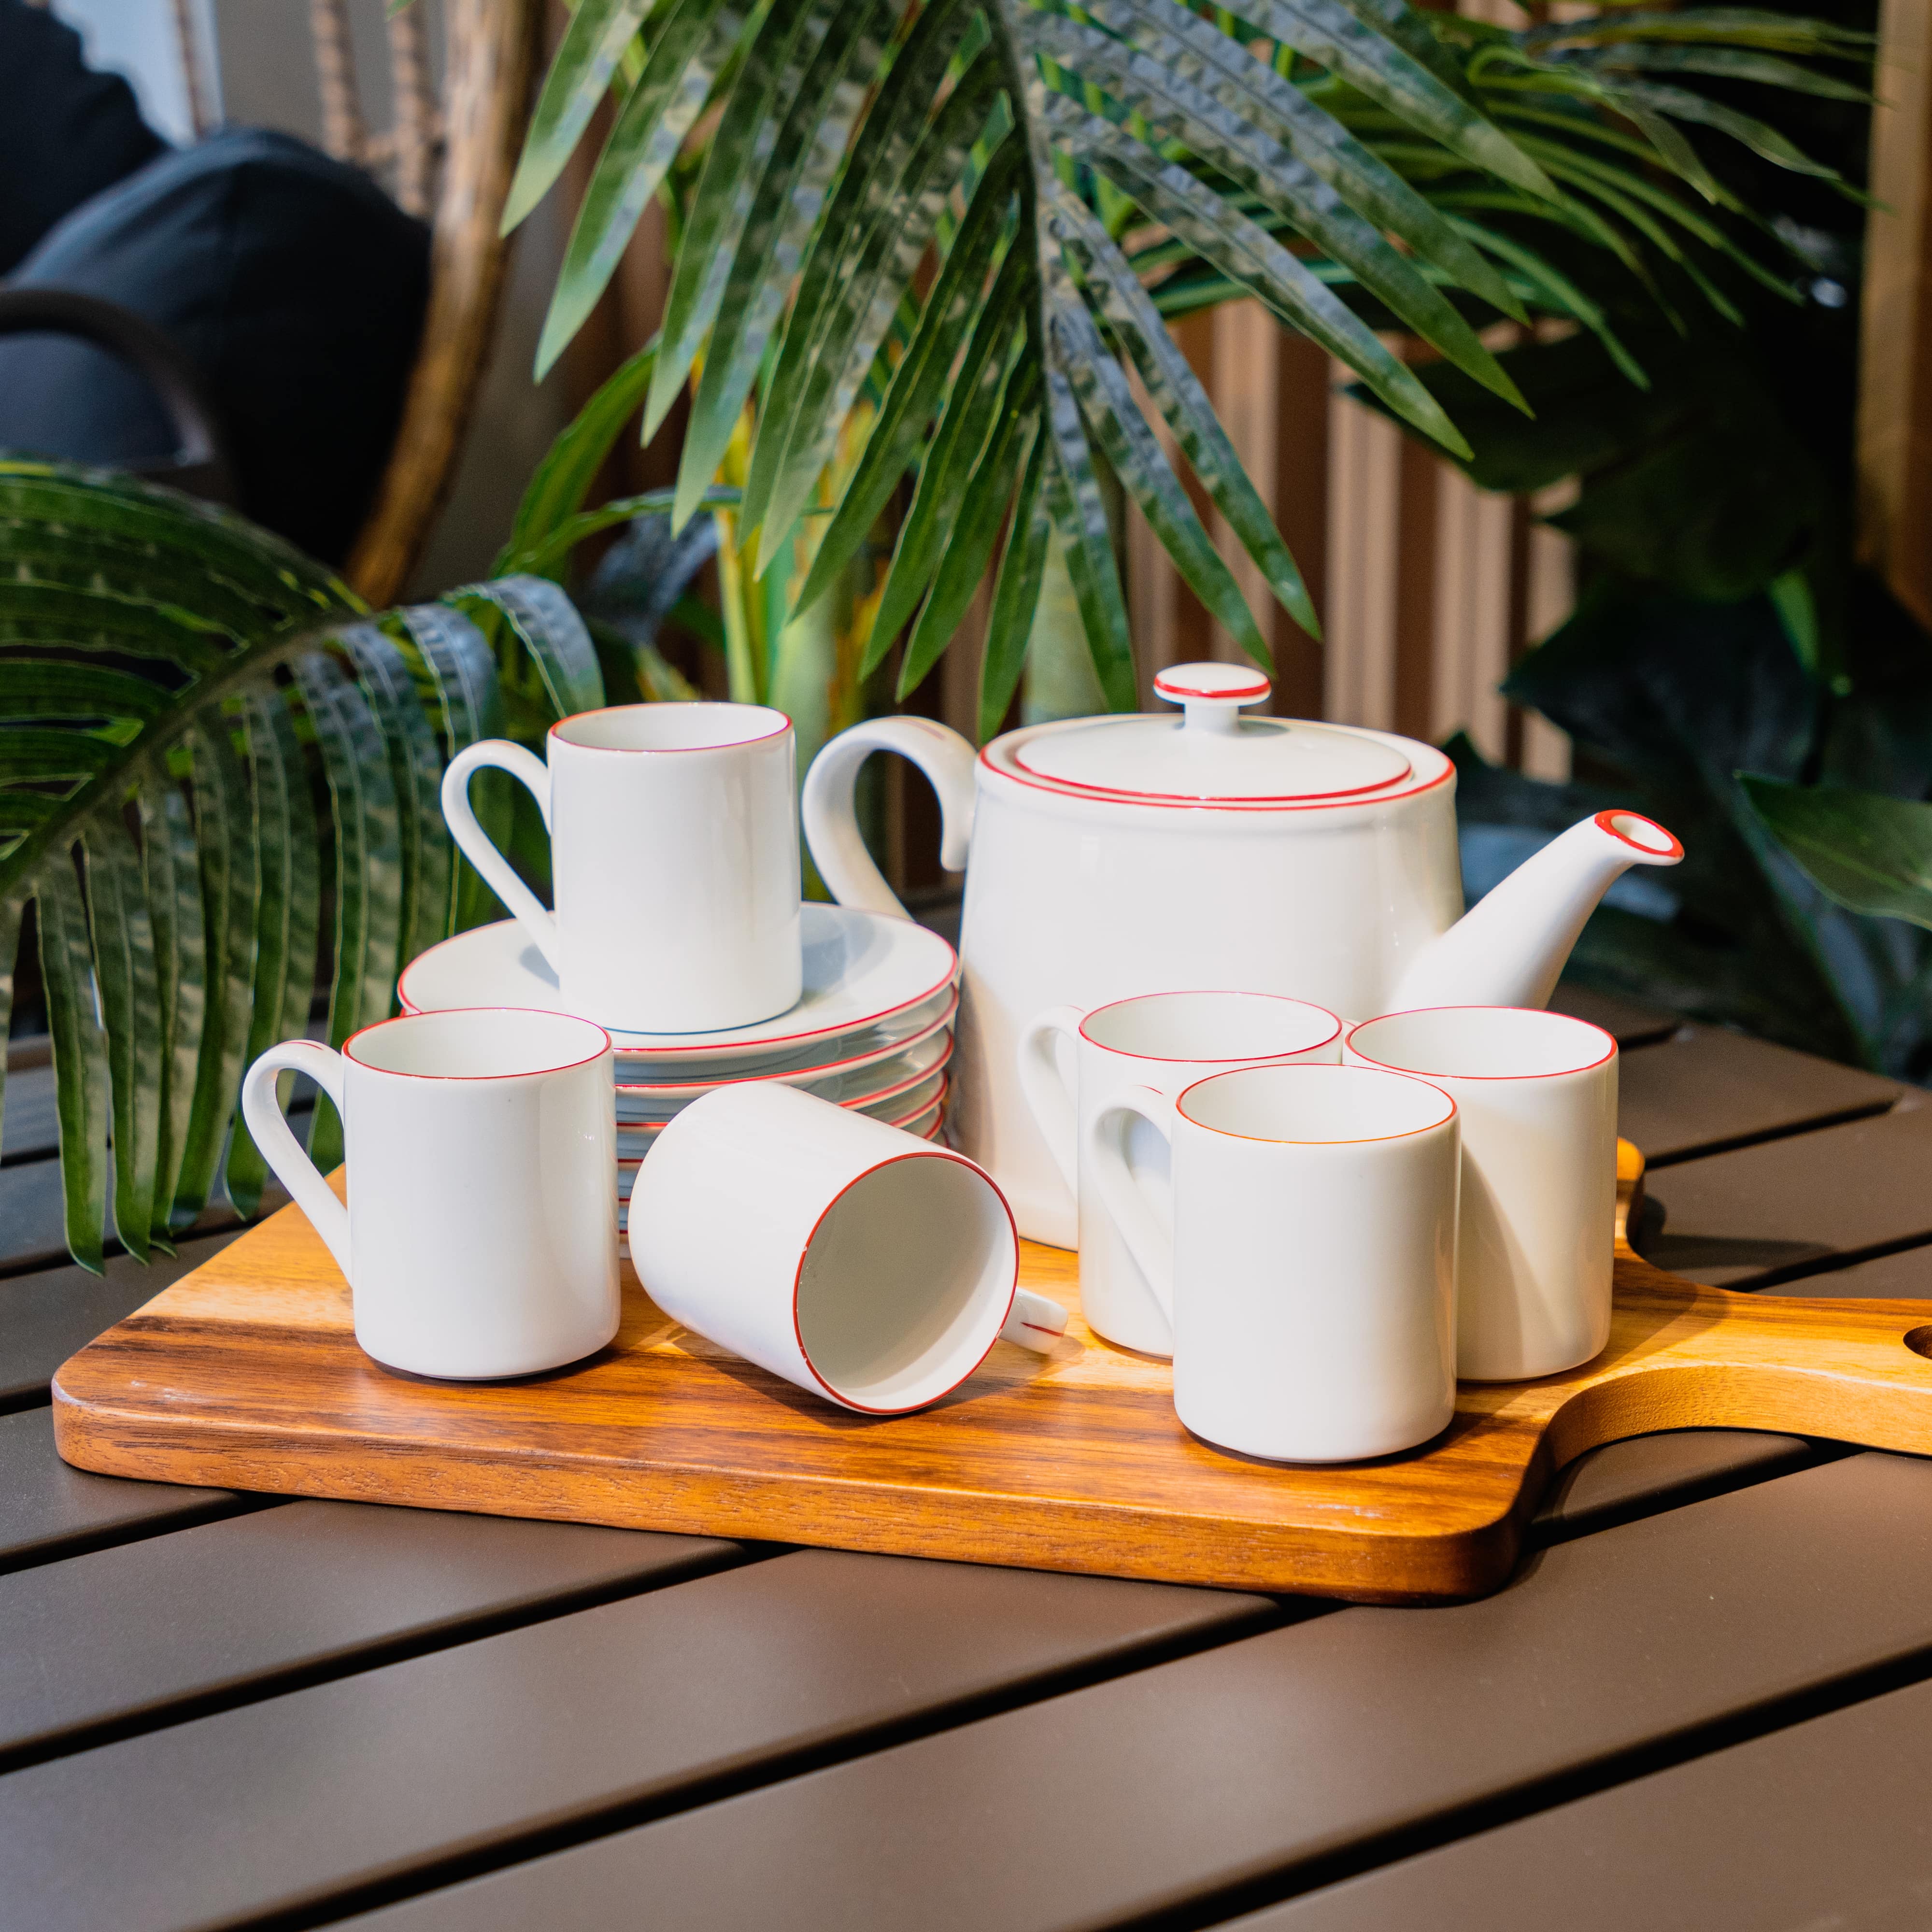 Bộ ấm chén kèm 6 tách uống trà bằng sành đẹp, cao cấp CHERRY màu trắng viền đỏ sang trọng | Index Living Mall - Phân phối độc quyền tại Việt Nam